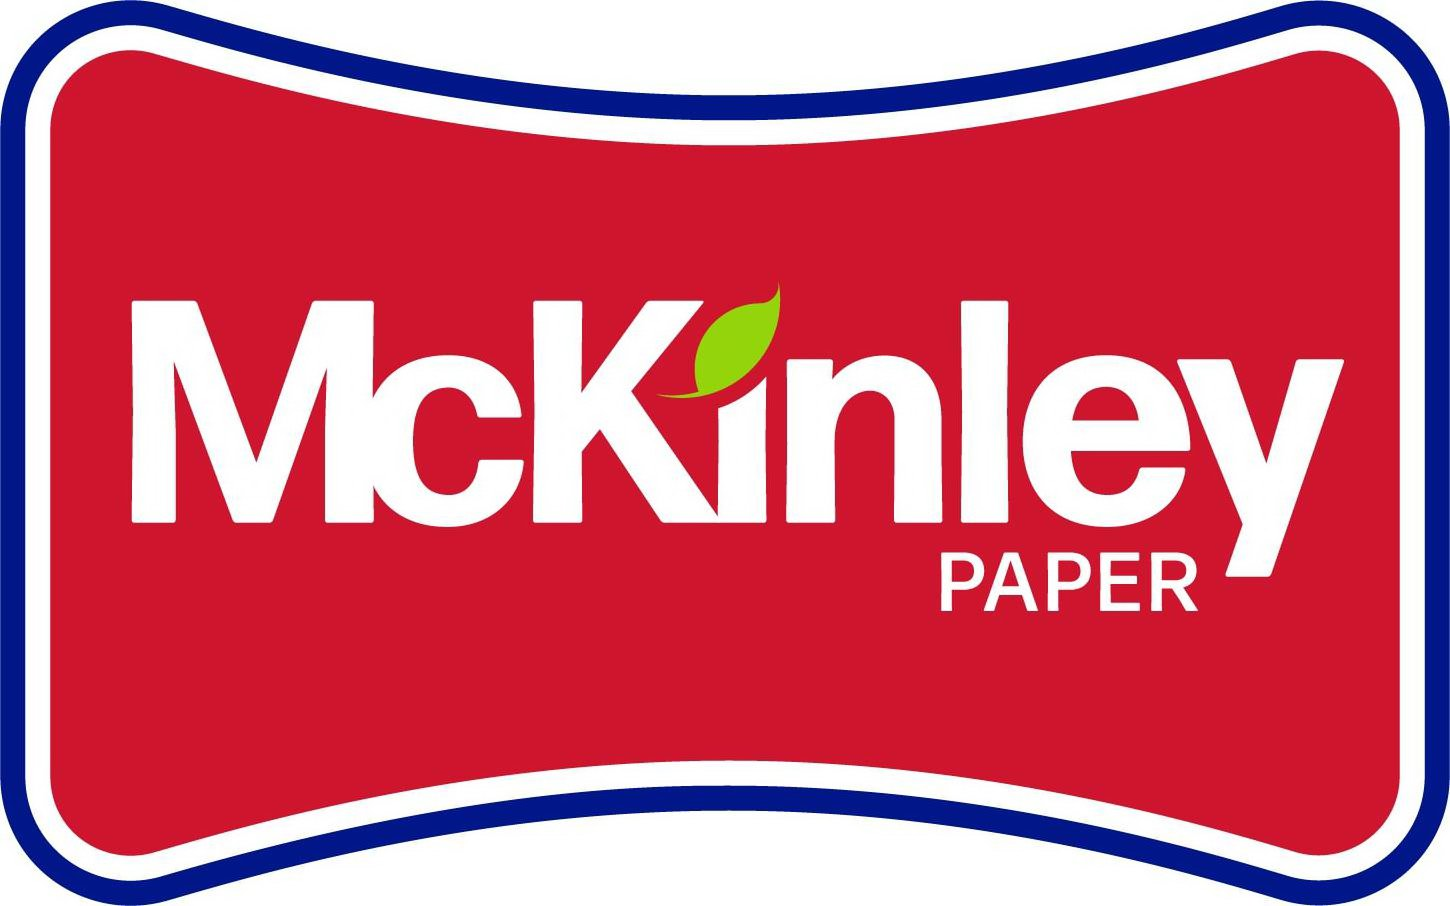  MCKINLEY PAPER